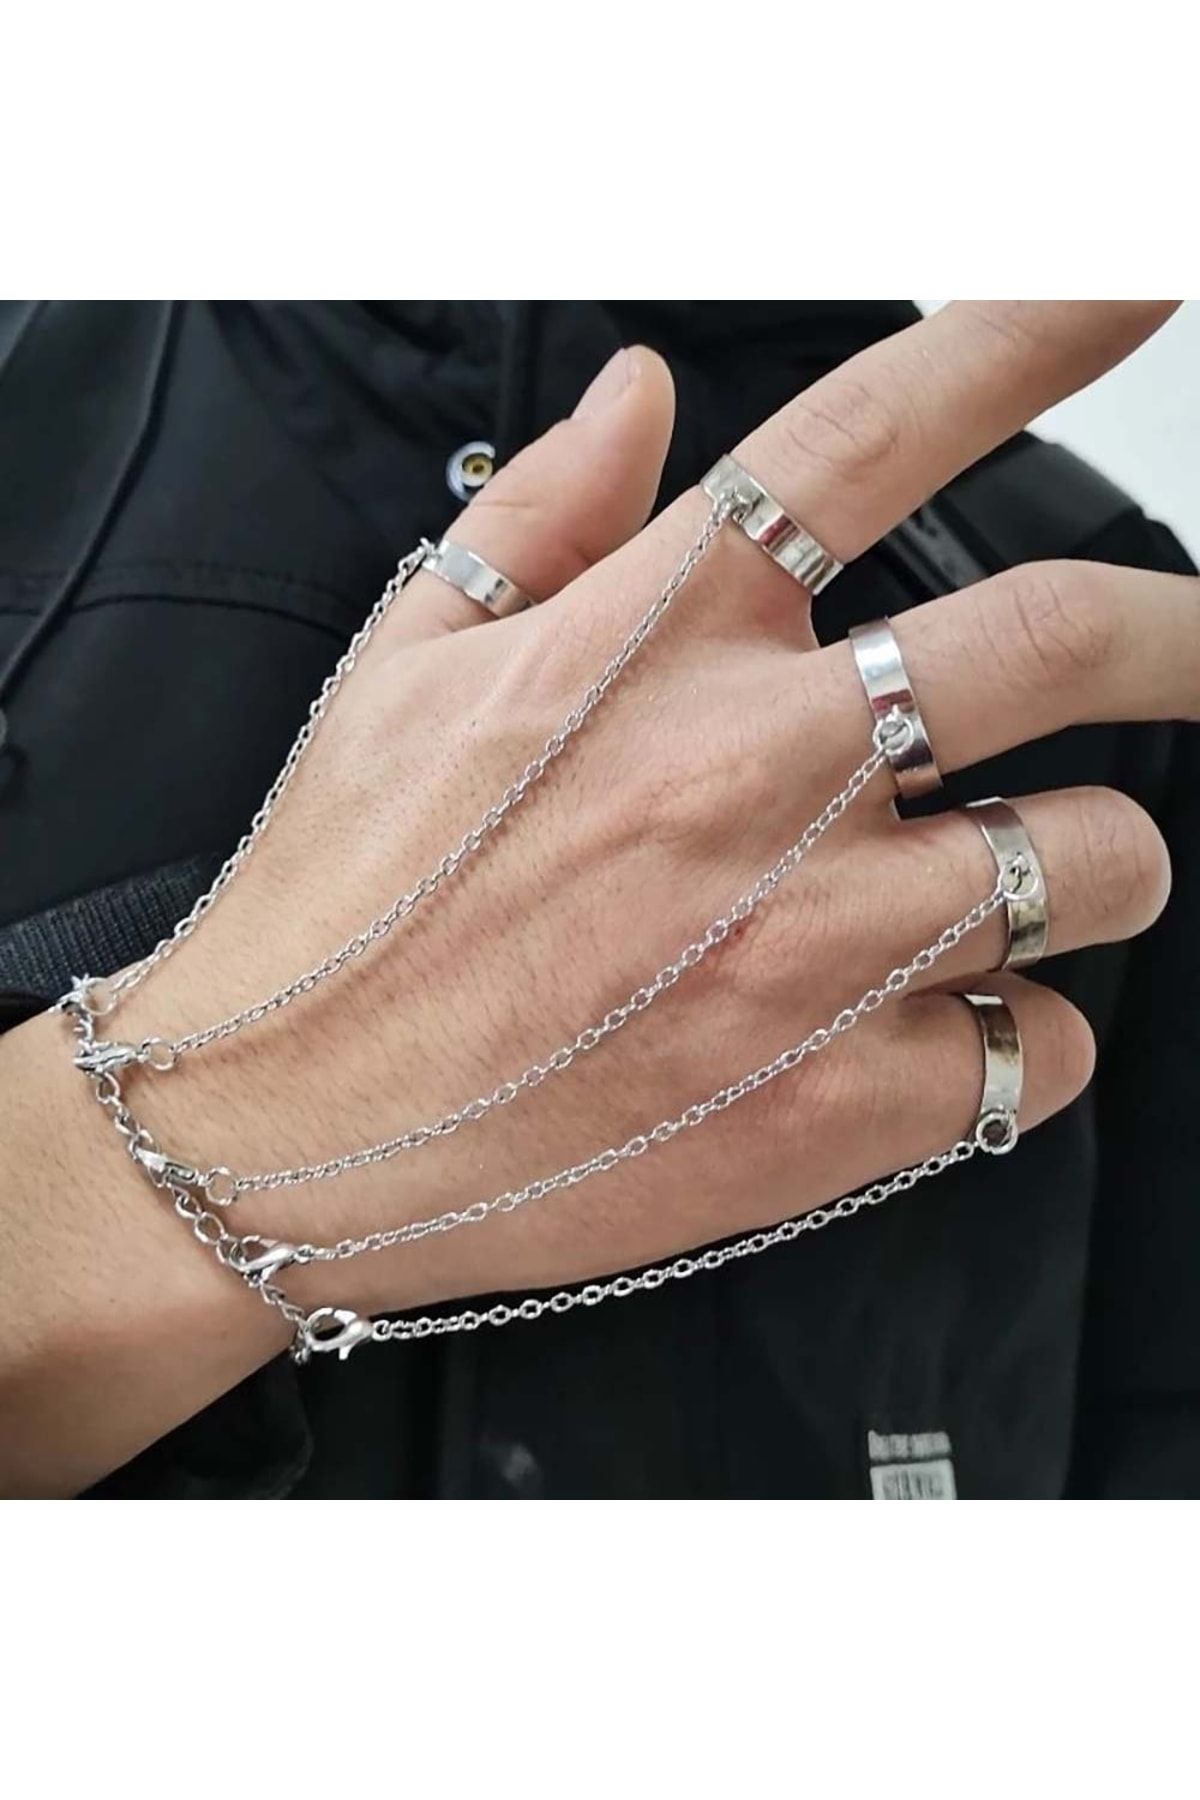 DIEZI Cuban Link Chain Finger Ring Bracelet For Men Women Vintage Black PU  Leather Rivet Wrap Bracelet Cosplay Gift New Jewelry - AliExpress